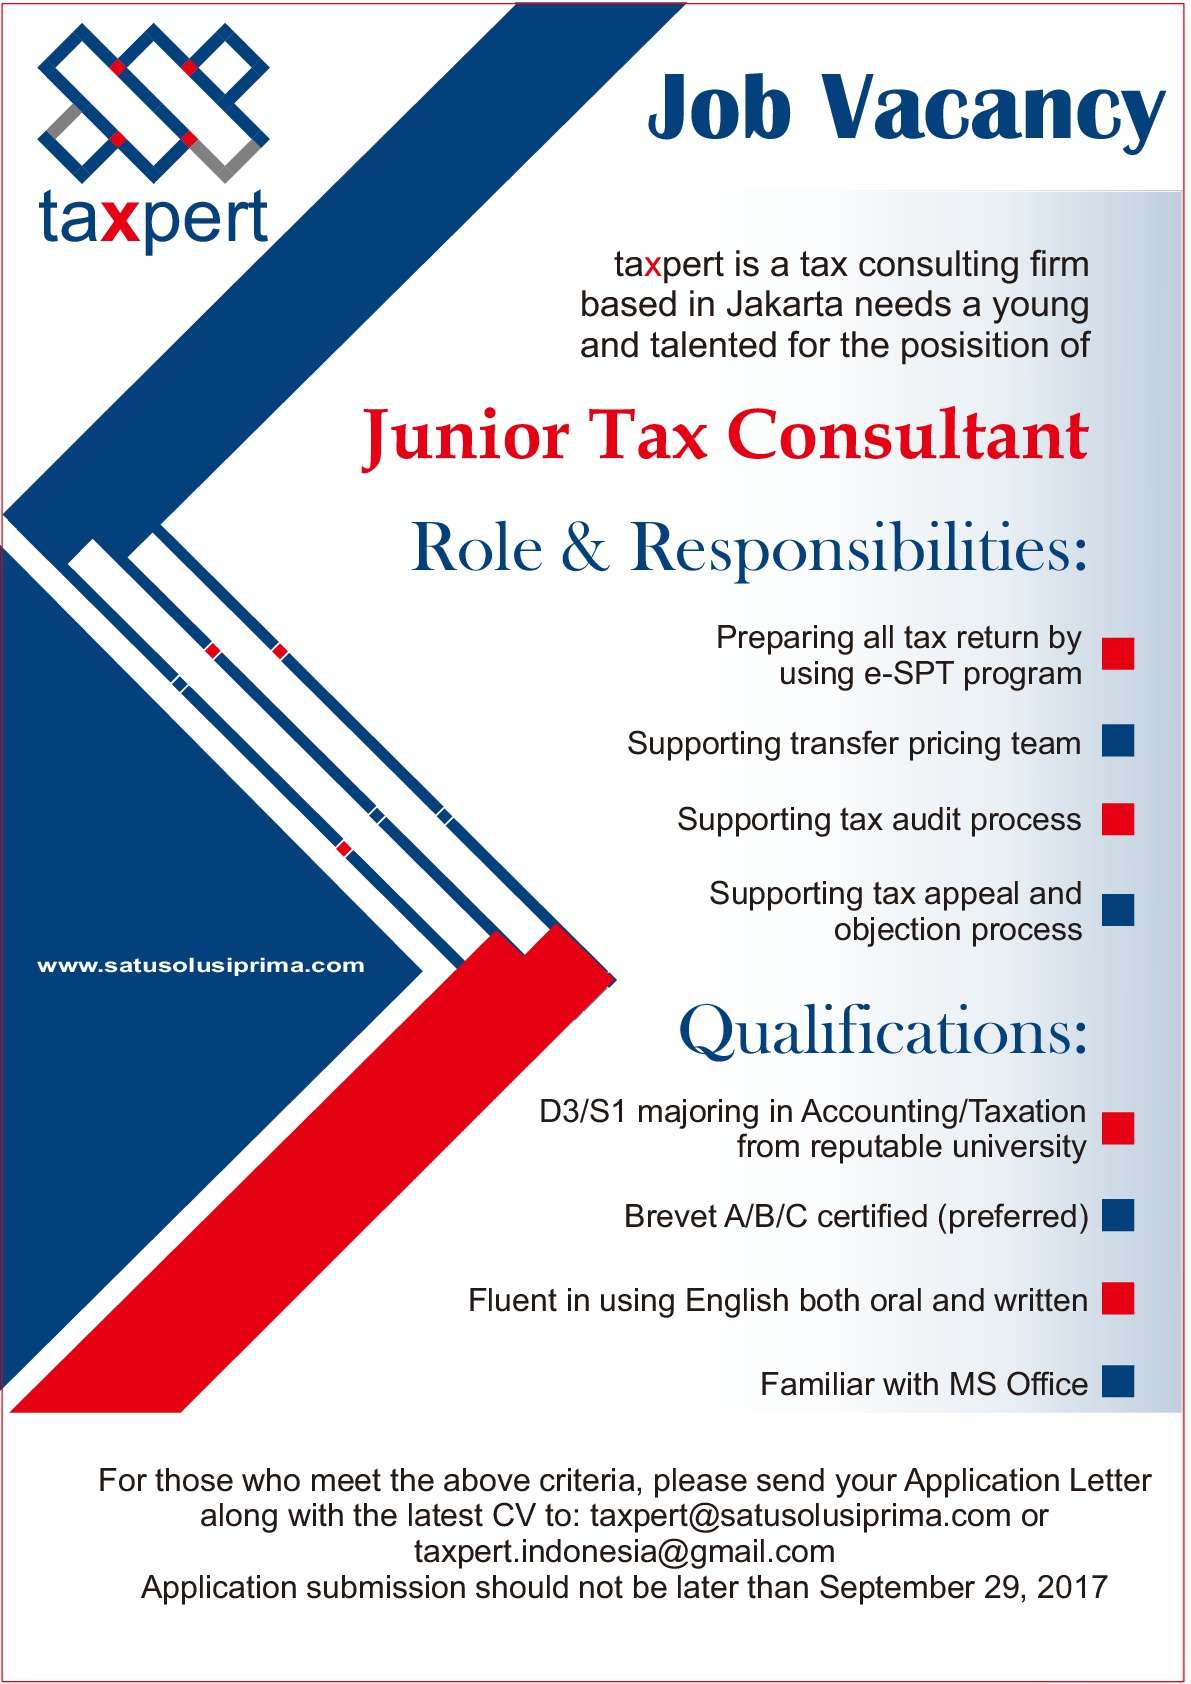 Lowongan Kerja Junior Tax Consultant Taxpert (PT. Satu Solusi Prima)